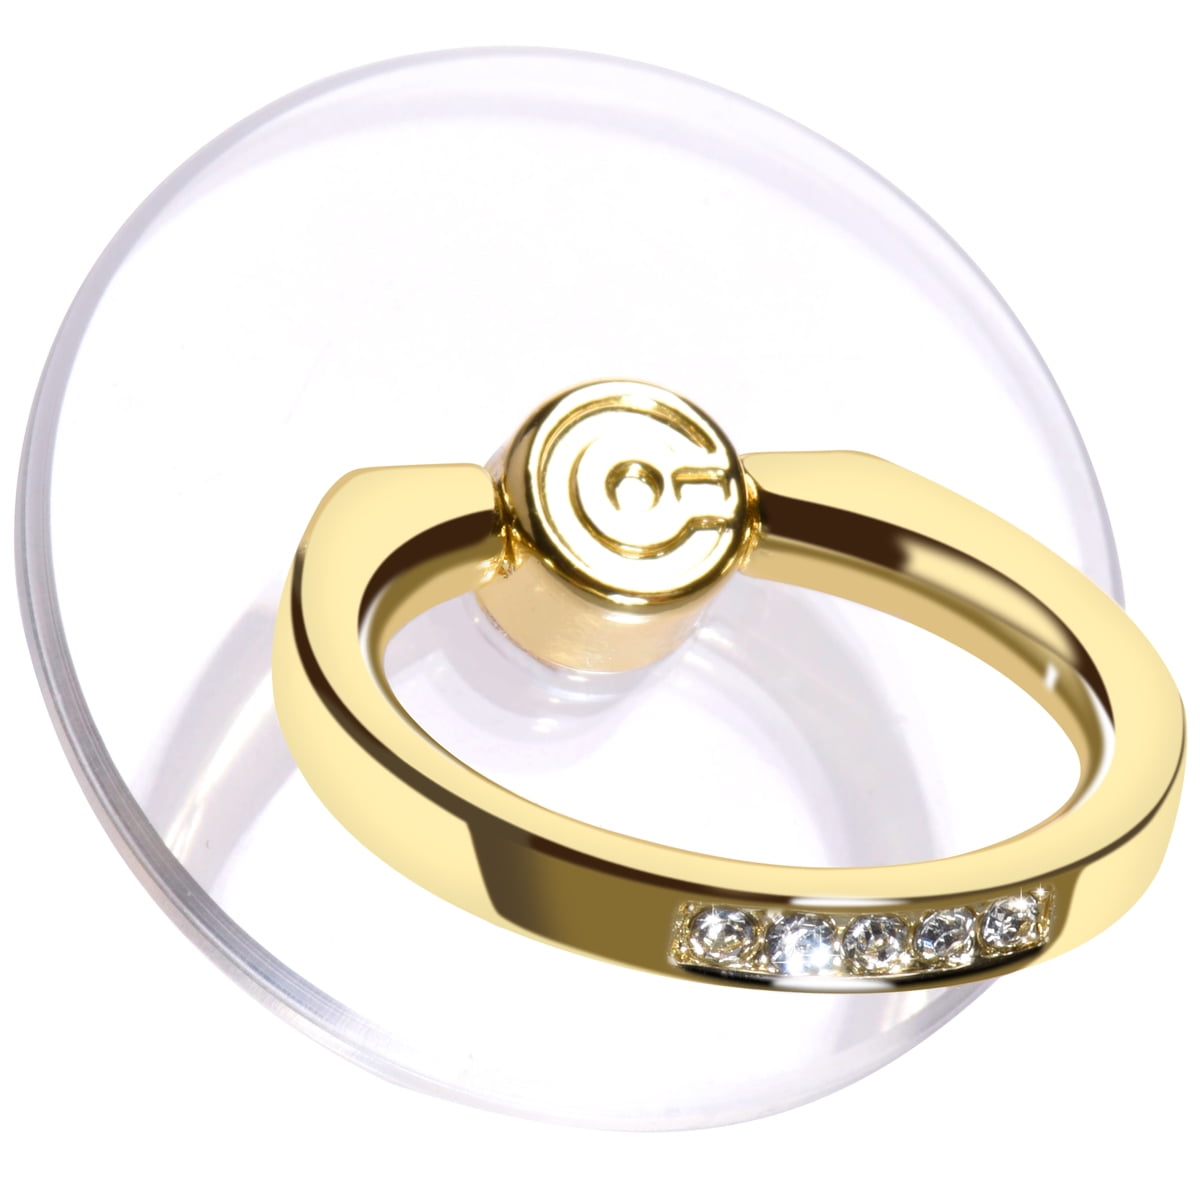 Kapmore Jewelry Holder Creative Hand Shape Ring India | Ubuy